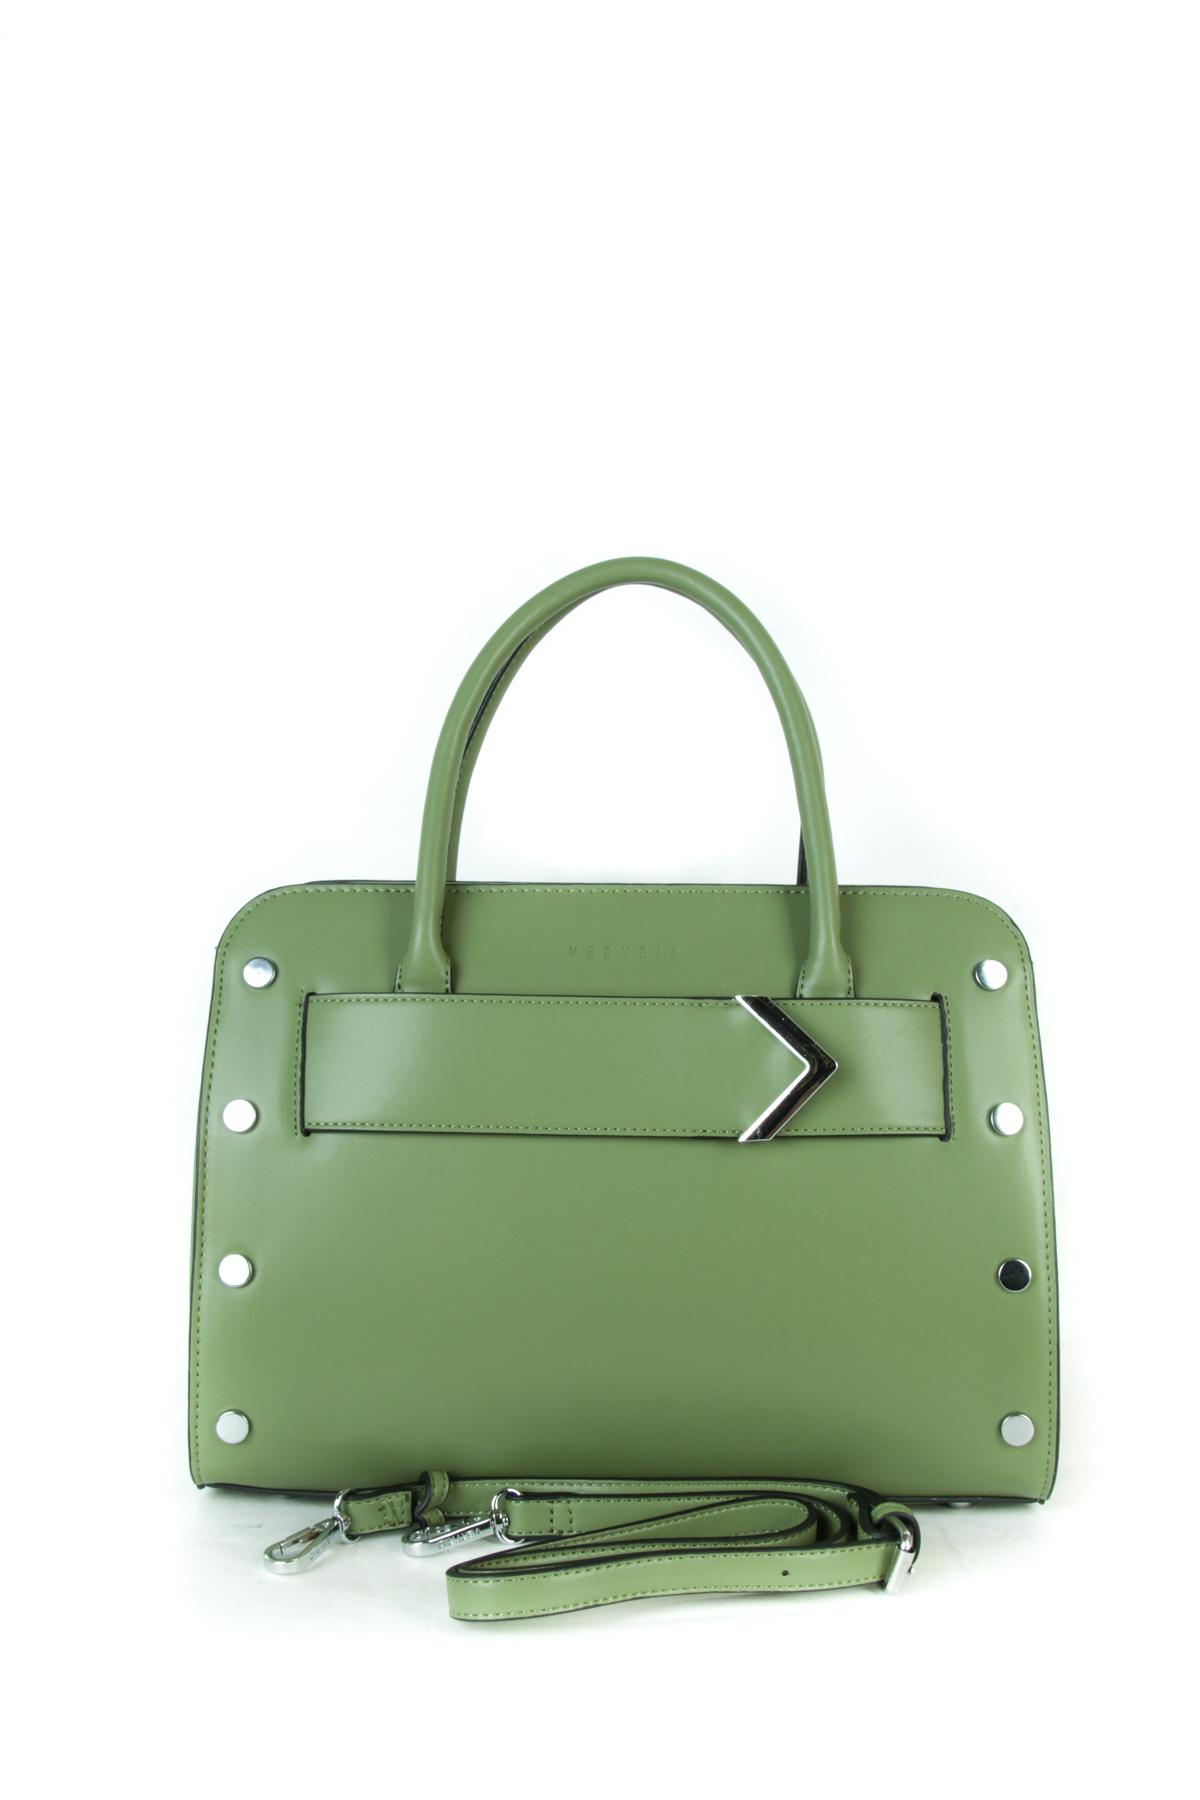 Handbags Bags C5063-2-VERT Max & Enjoy | Efashion Paris on eFashion.